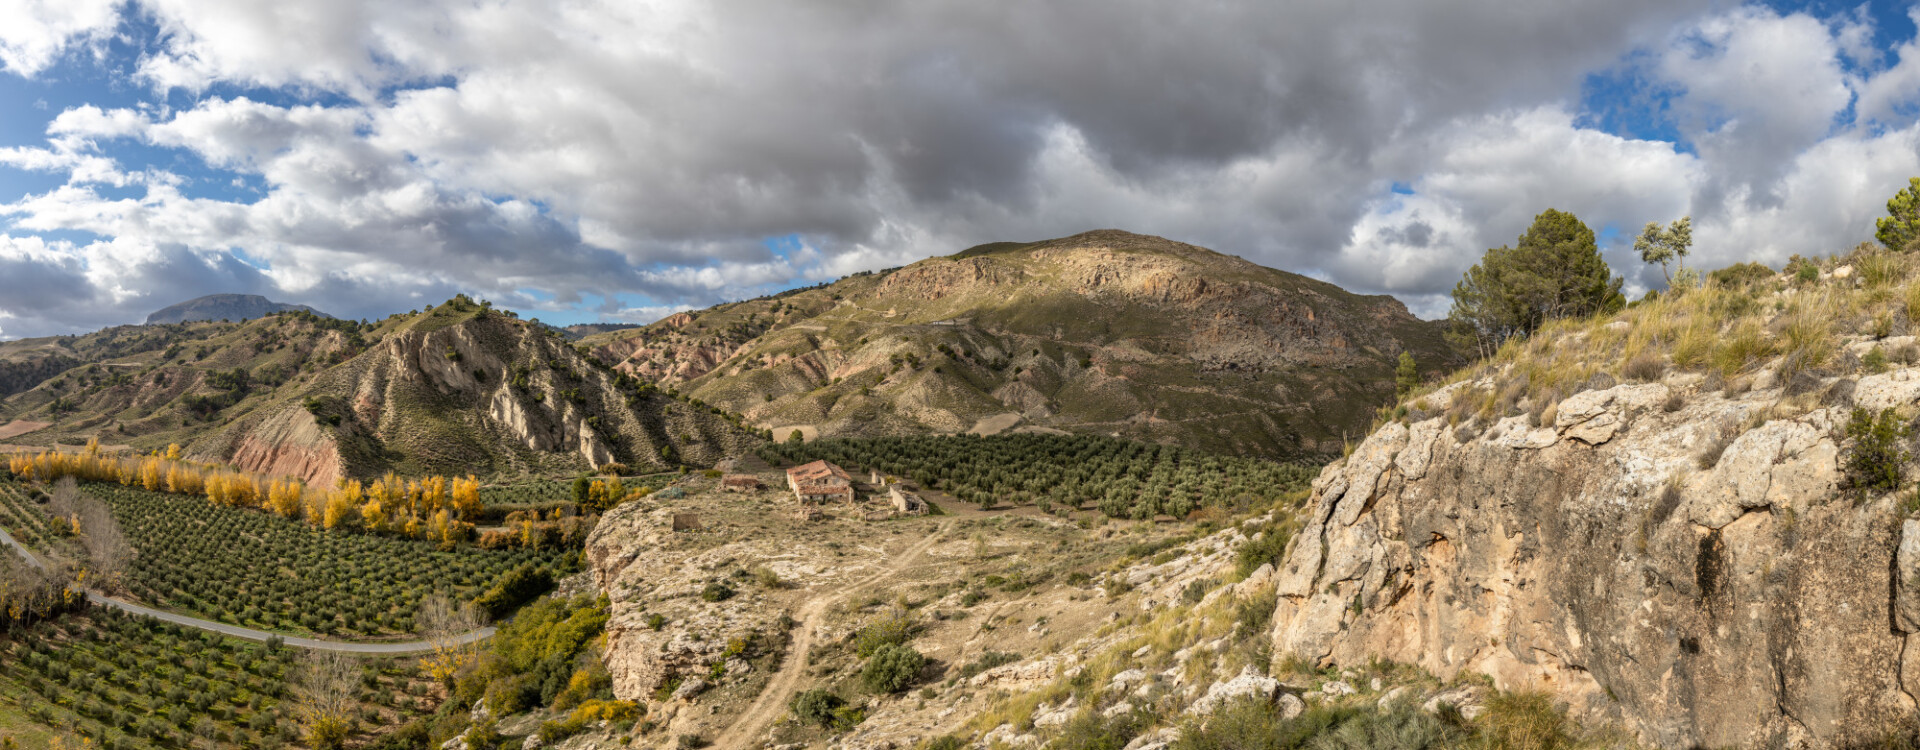 Acequia del Toril Spain Mountain Landscape